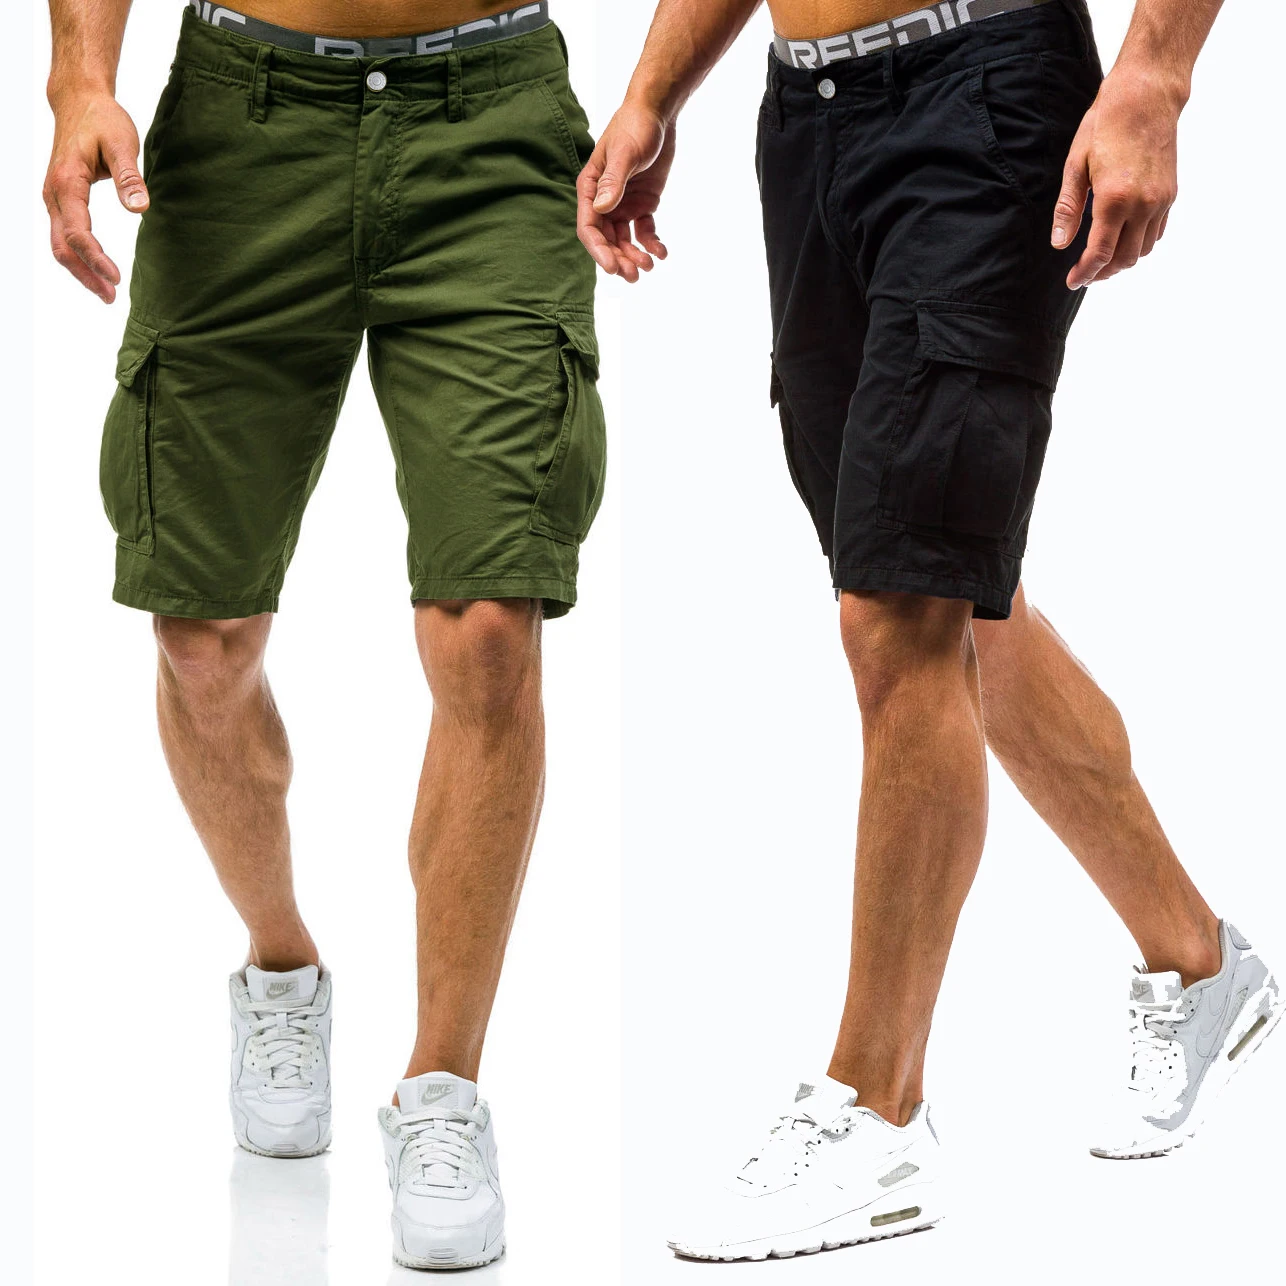 Новый 2018 Для мужчин шорты-карго Повседневное свободные короткие штаны камуфляж Военная Летний стиль по колено 2 цвета шорты Для мужчин